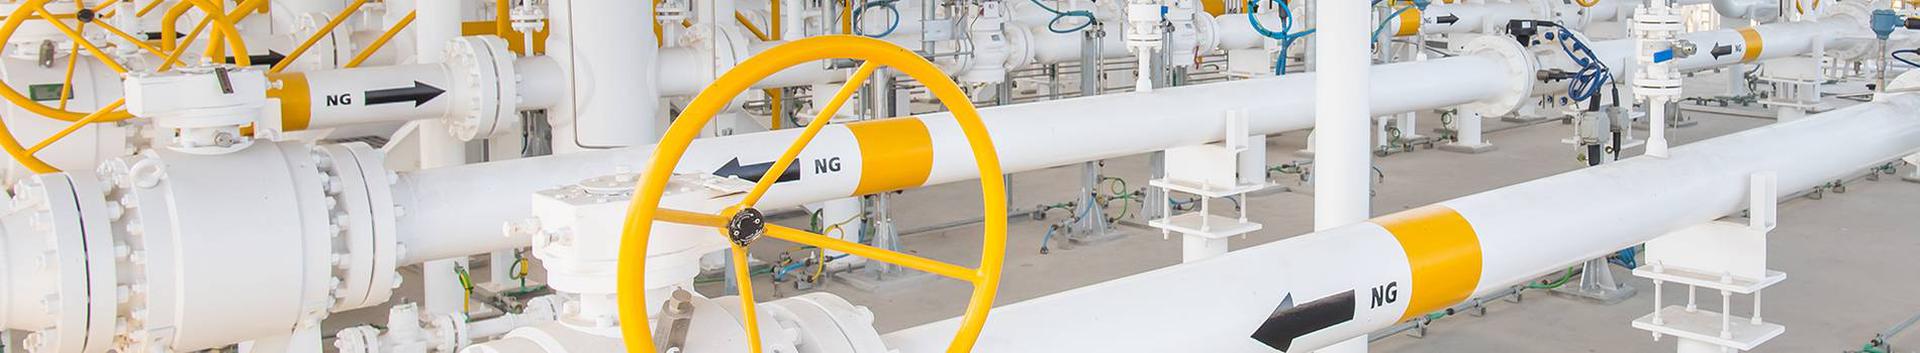 Suurim mainega ettevõte LNG GORSKAYA OVERSEAS OÜ, maineskoor 240, aktiivseid äriseoseid 3. Tegutseb peamiselt valdkonnas: Maagaasi ülekanne.